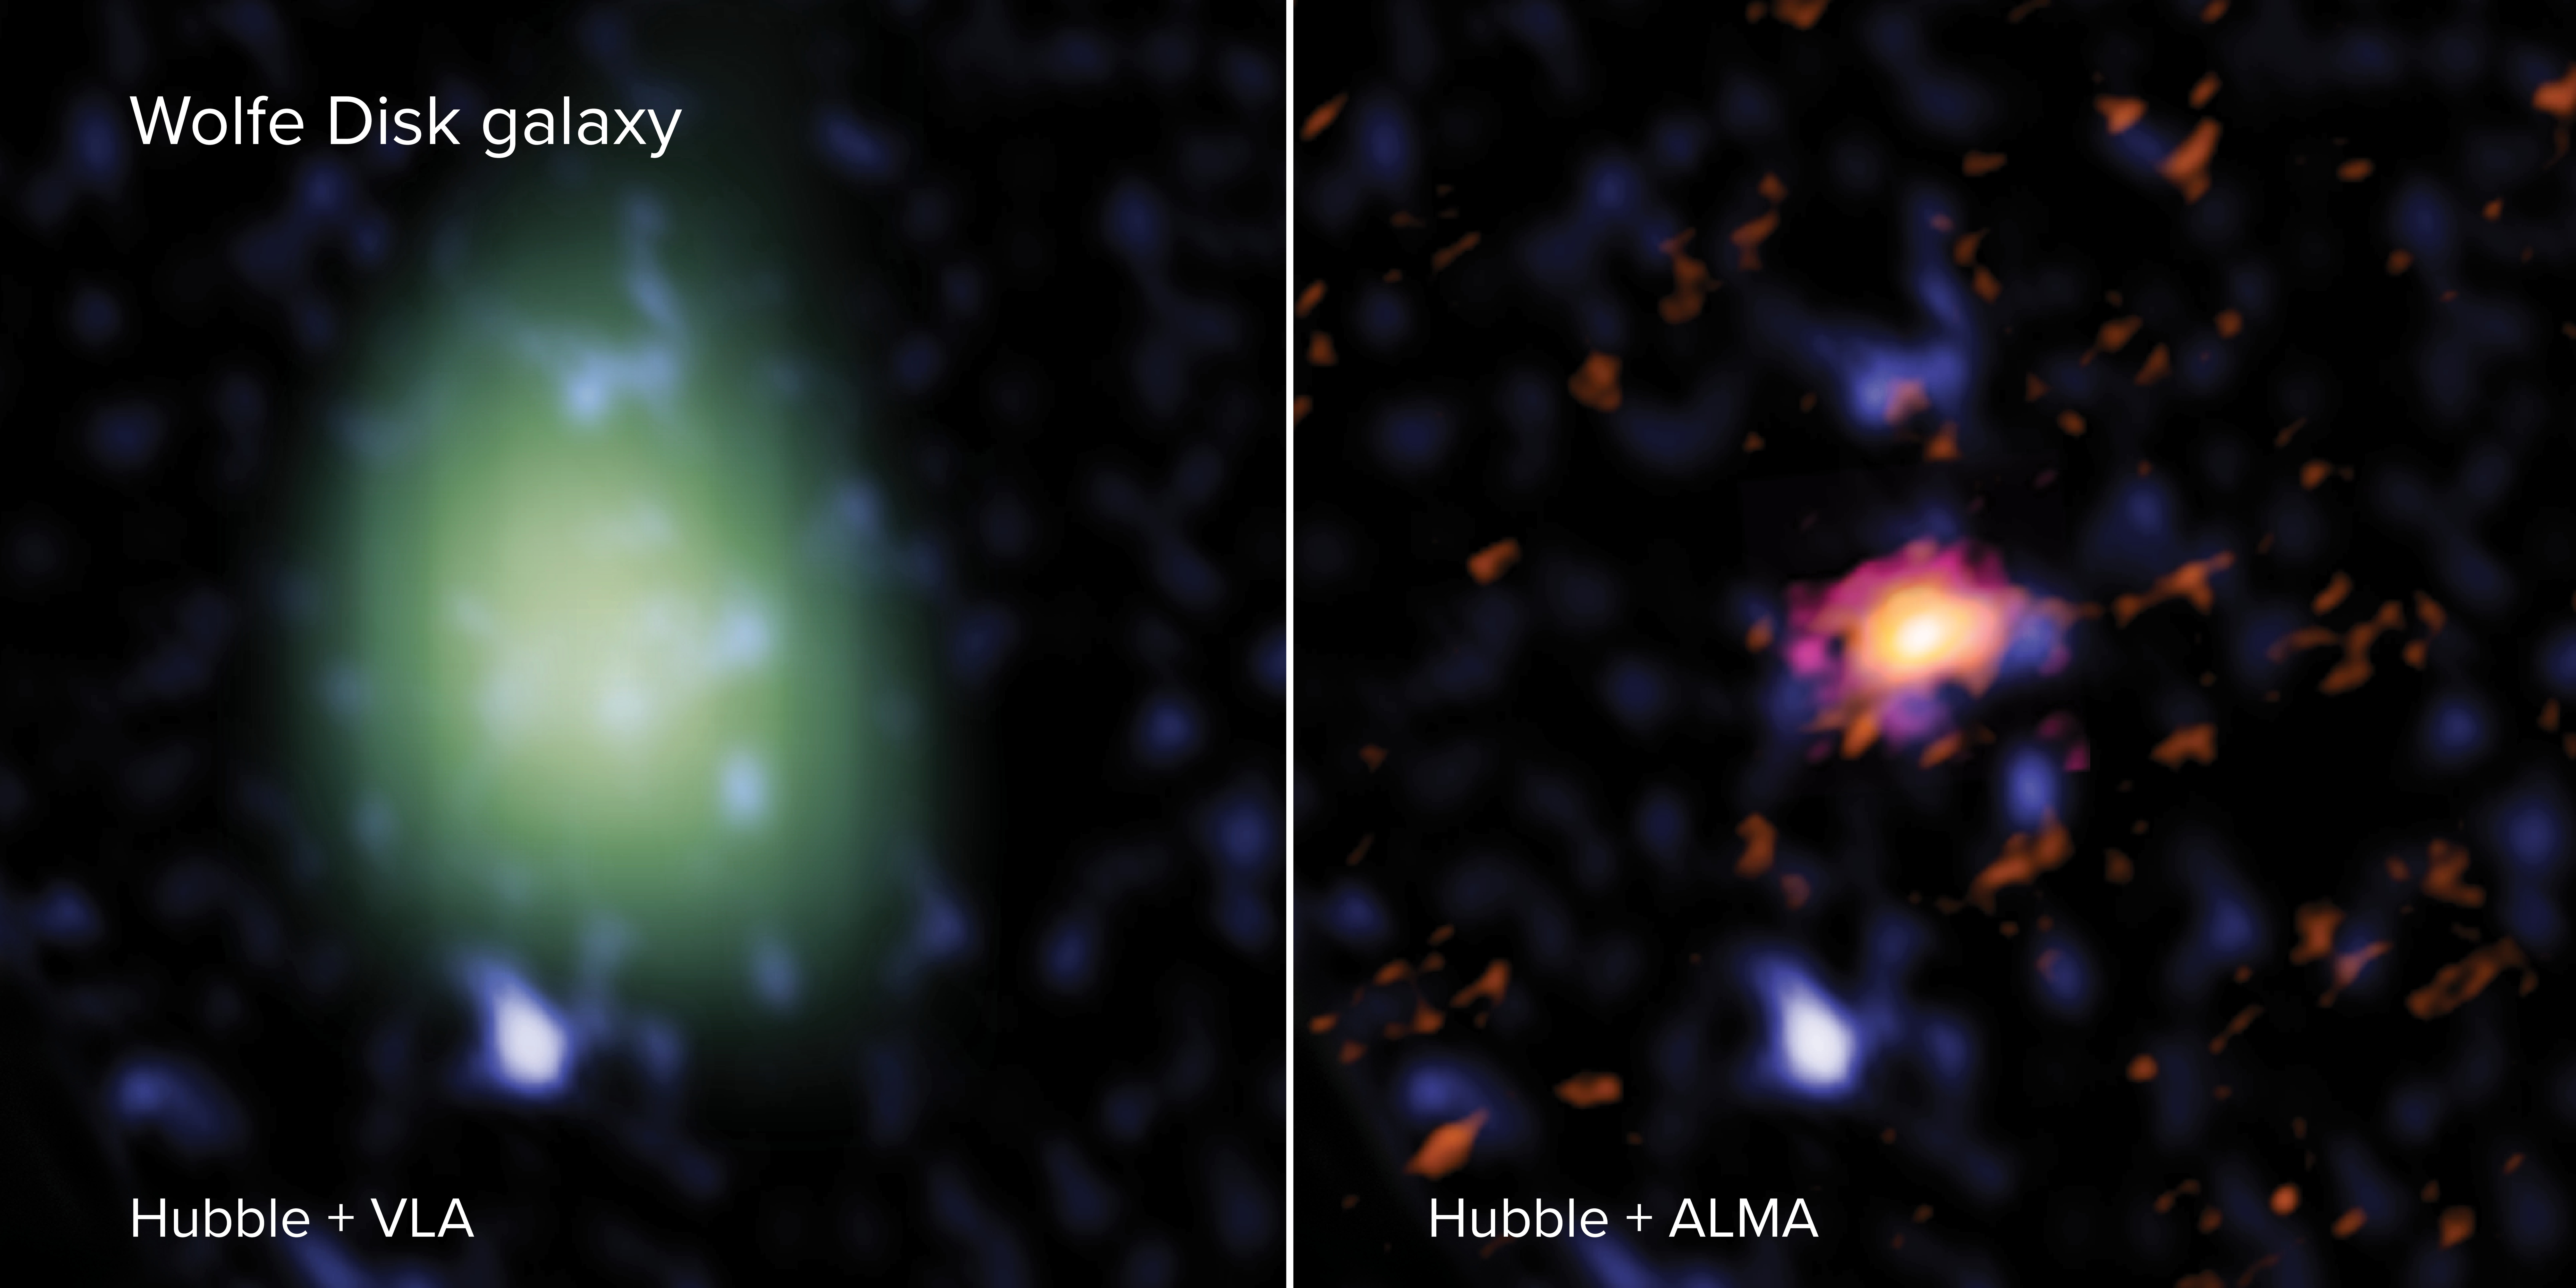 O Disco Wolfe observado através da combinação de dados do ALMA com o VLT (esquerda) e com o Hubble (direita) (Foto: S. Dagnello)